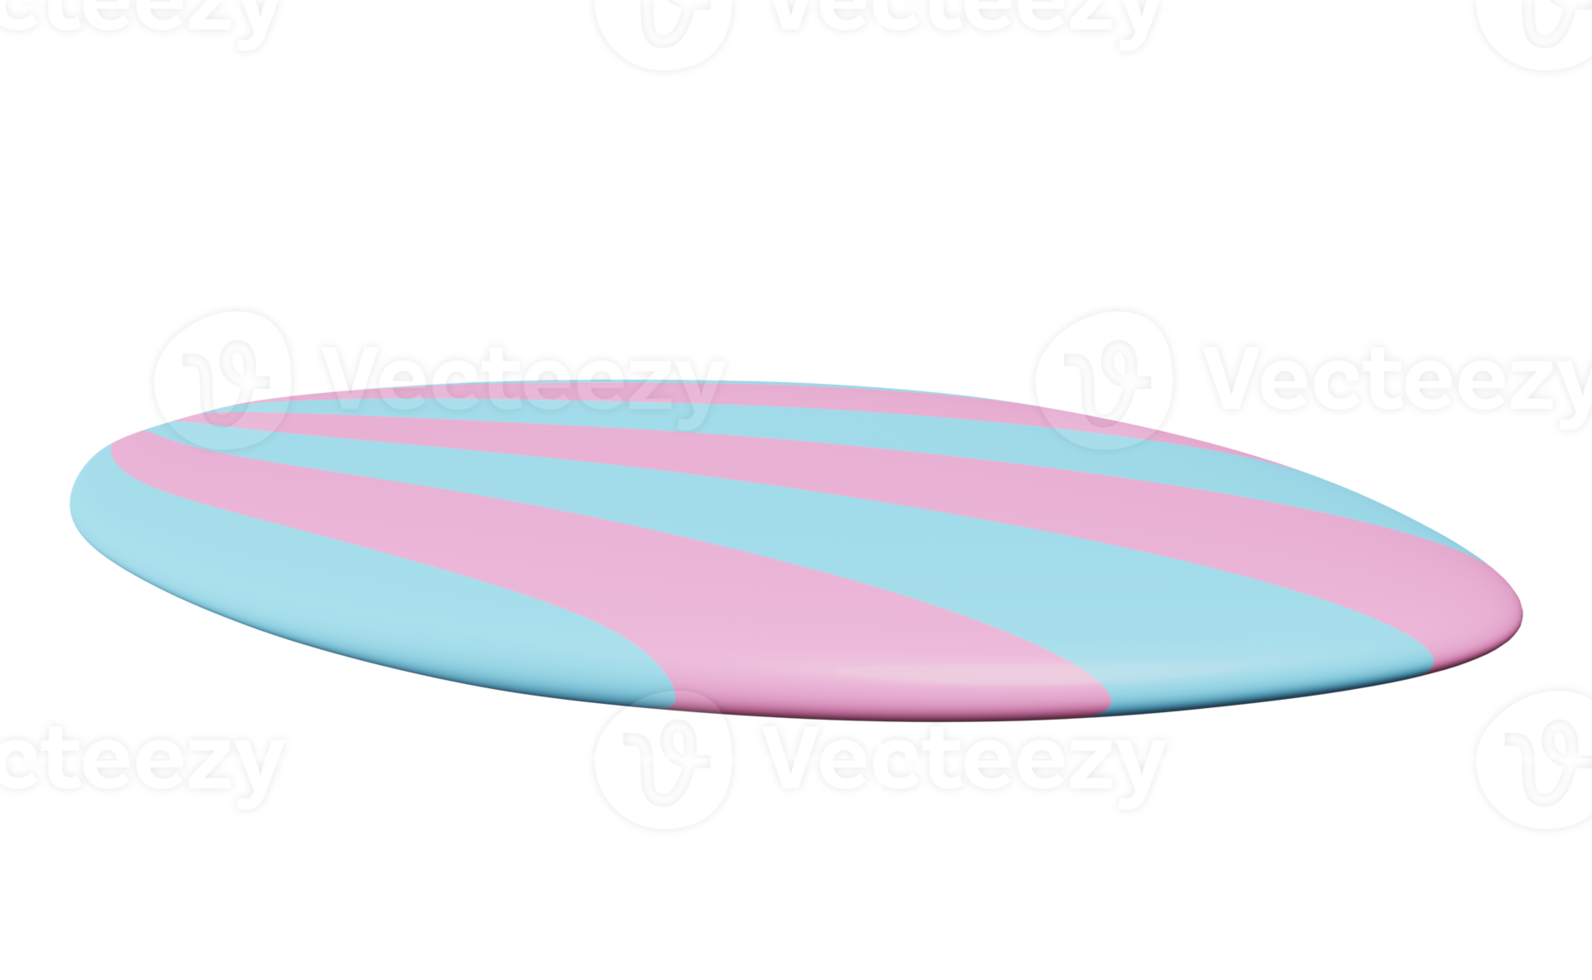 tabla de surf azul rosa aislada. concepto de viaje de verano, ilustración 3d o presentación 3d png